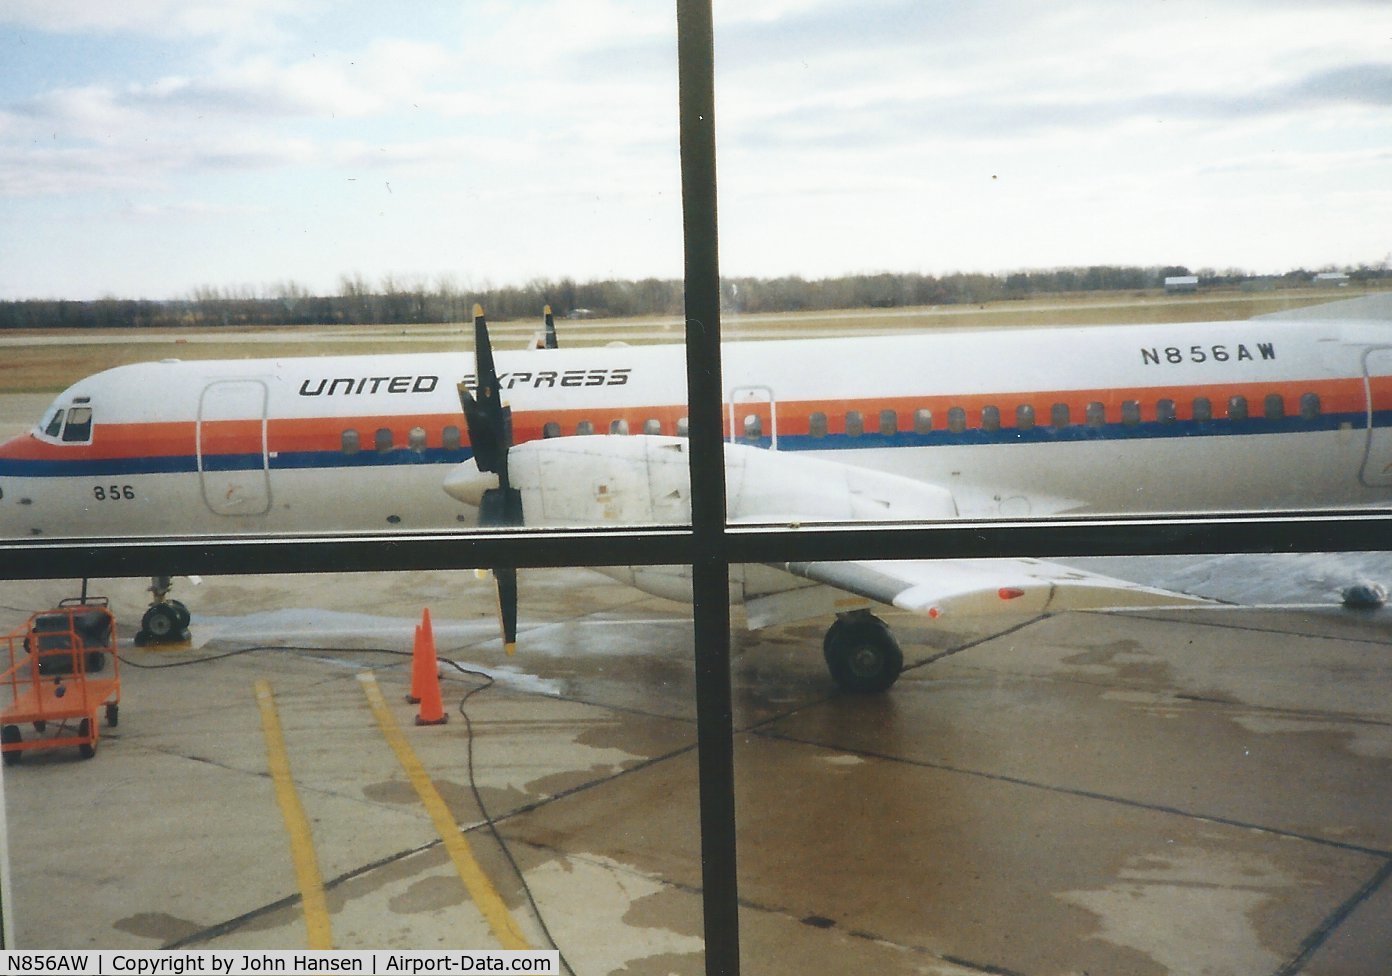 N856AW, 1990 British Aerospace ATP C/N 2032, Taken before boarding.